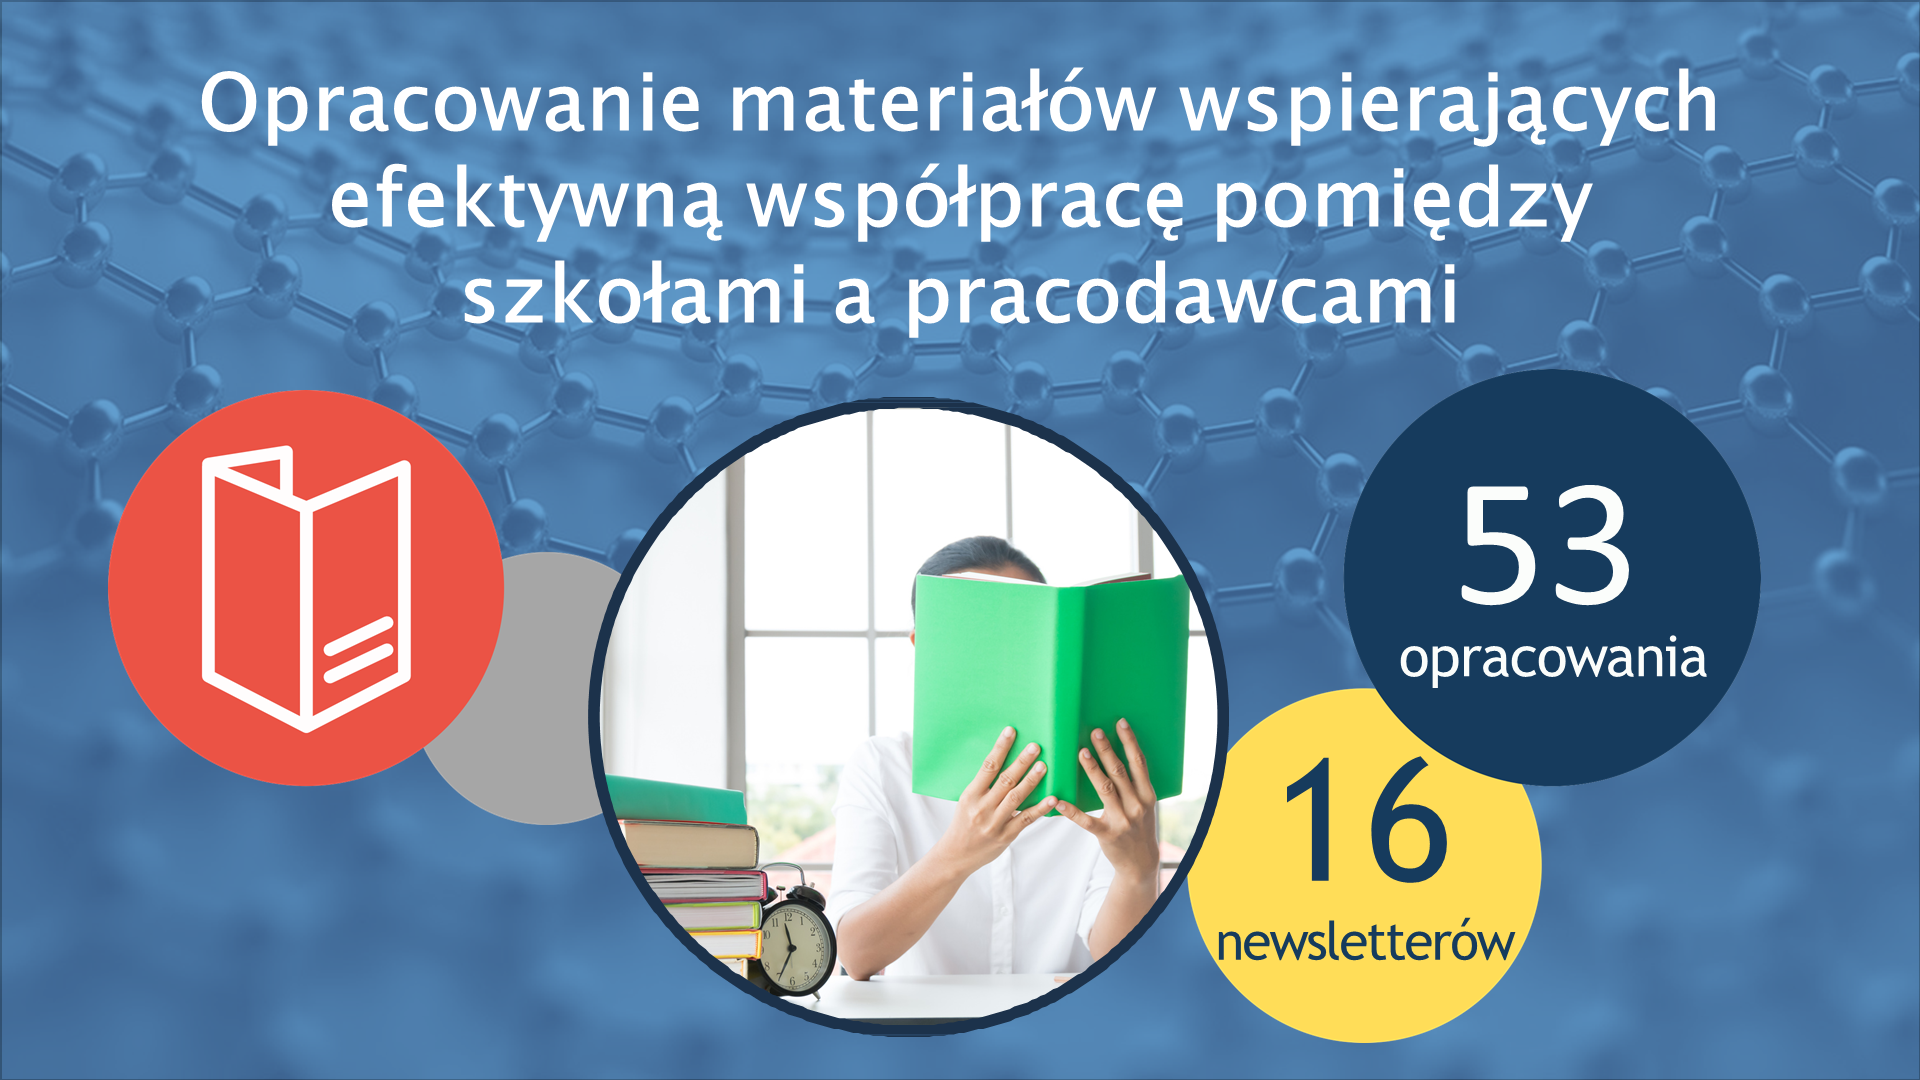 Działania CWRKDiZ w Poznaniu 2017-2021 Slajd19